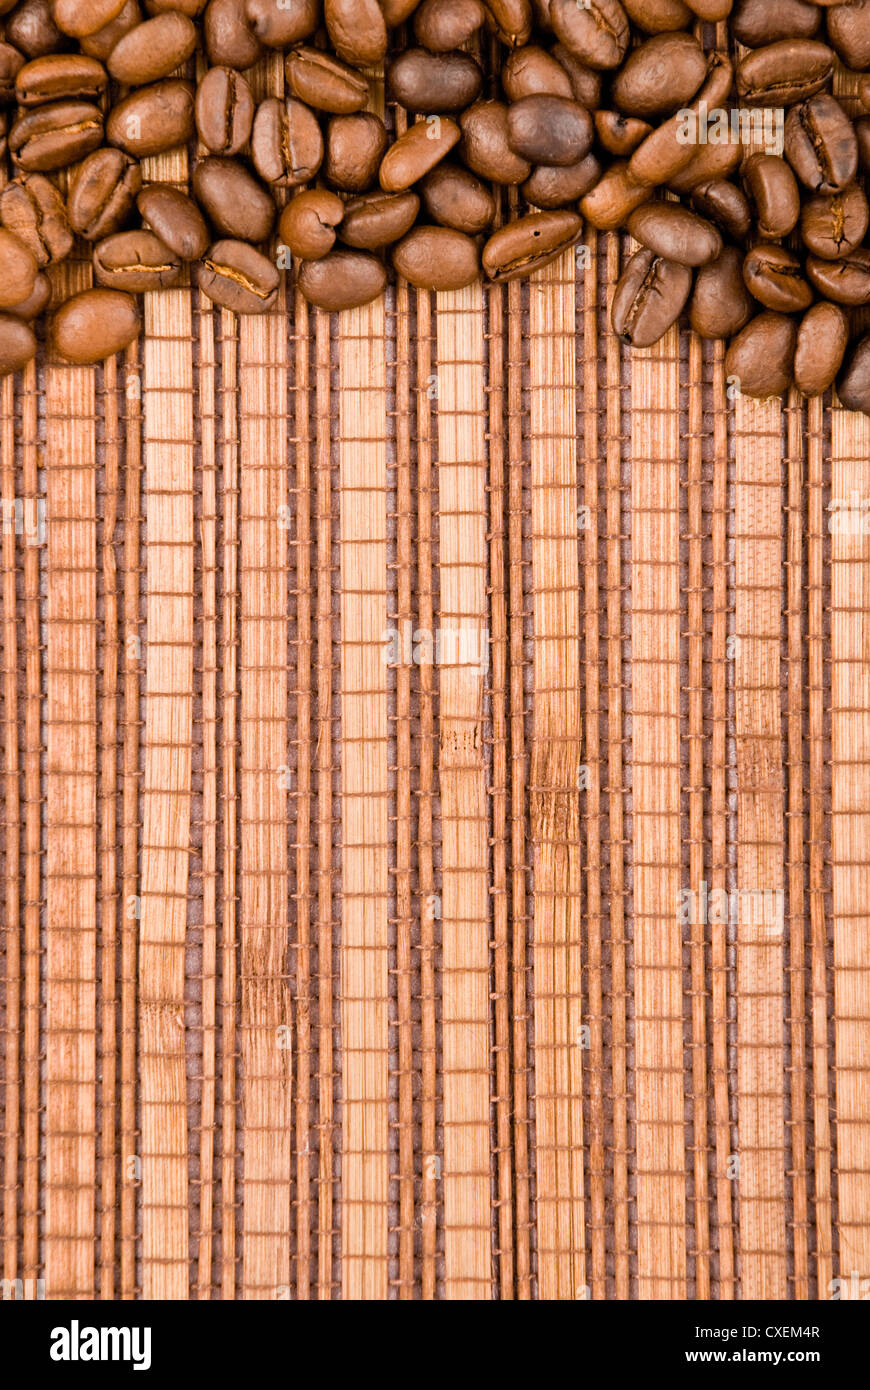 Los granos de café en el fondo de madera Foto de stock